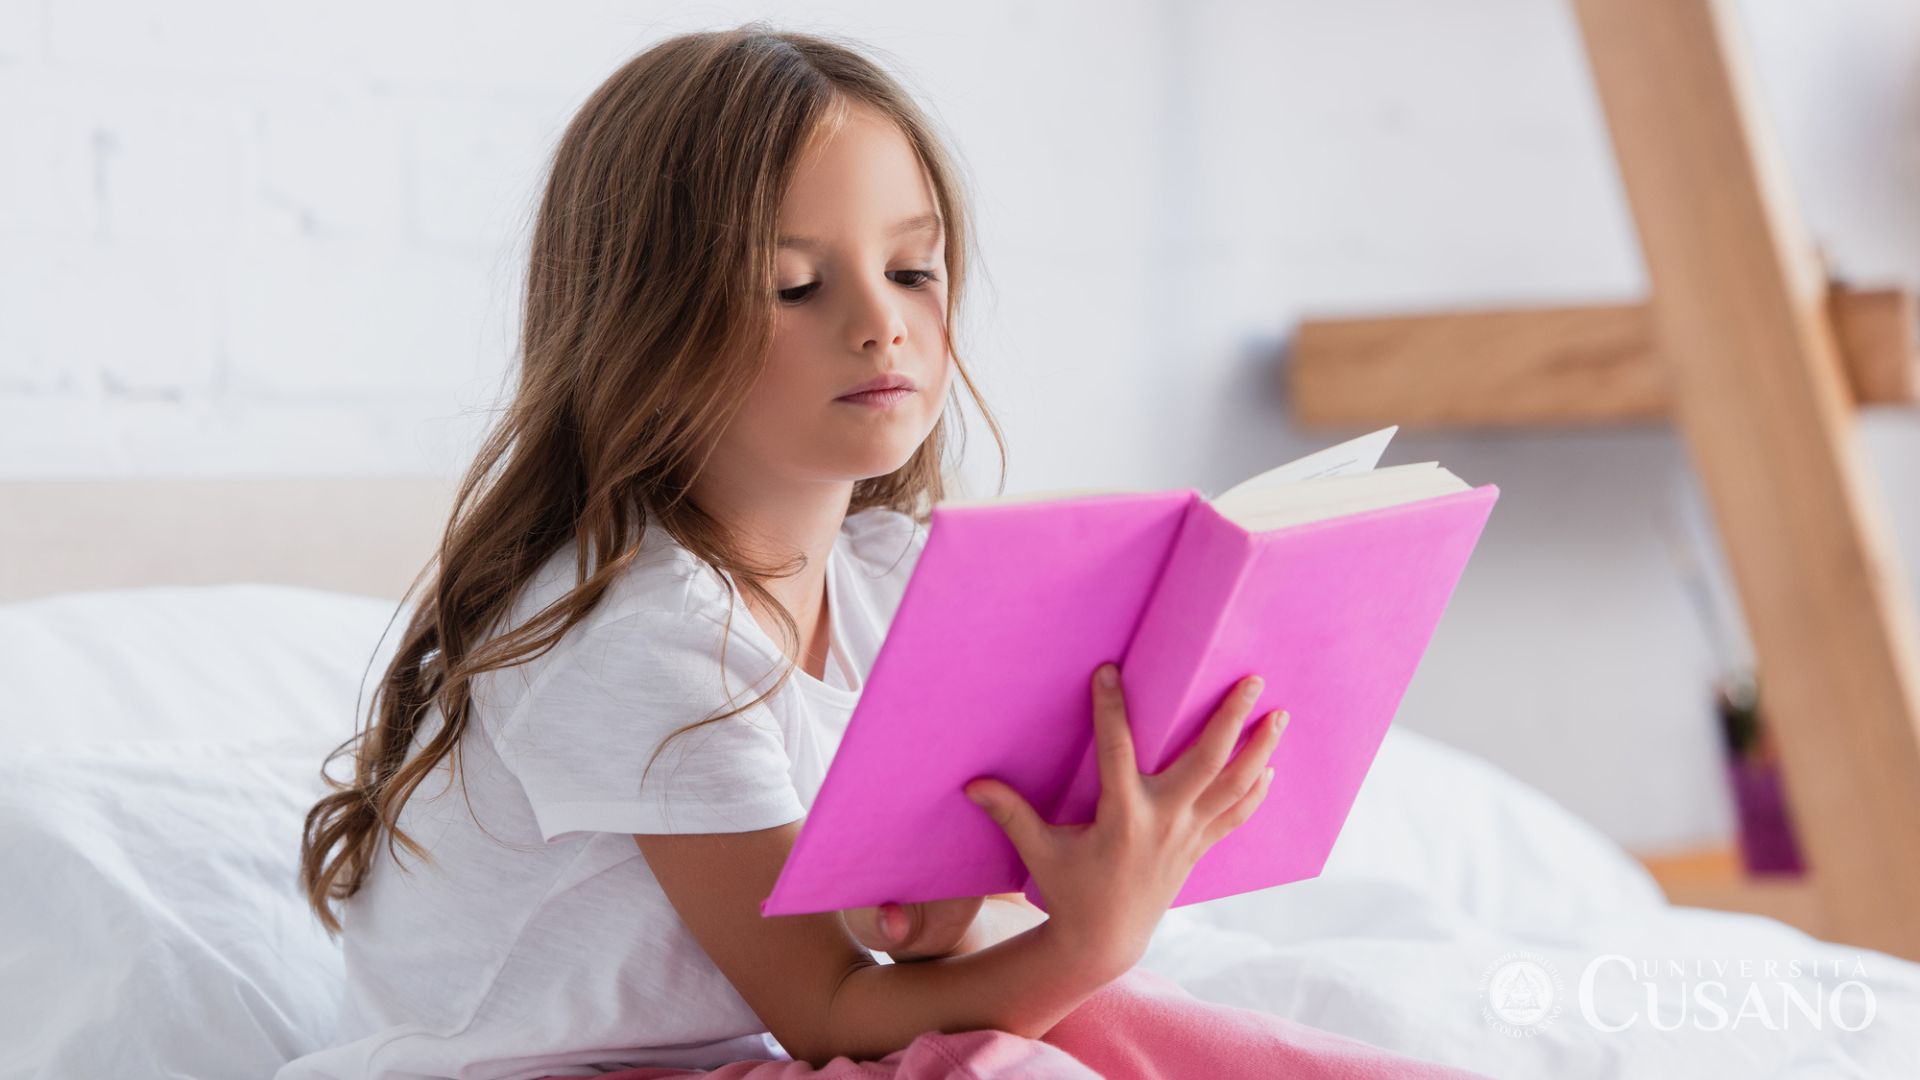 Come insegnare a leggere ai bambini: consigli utili